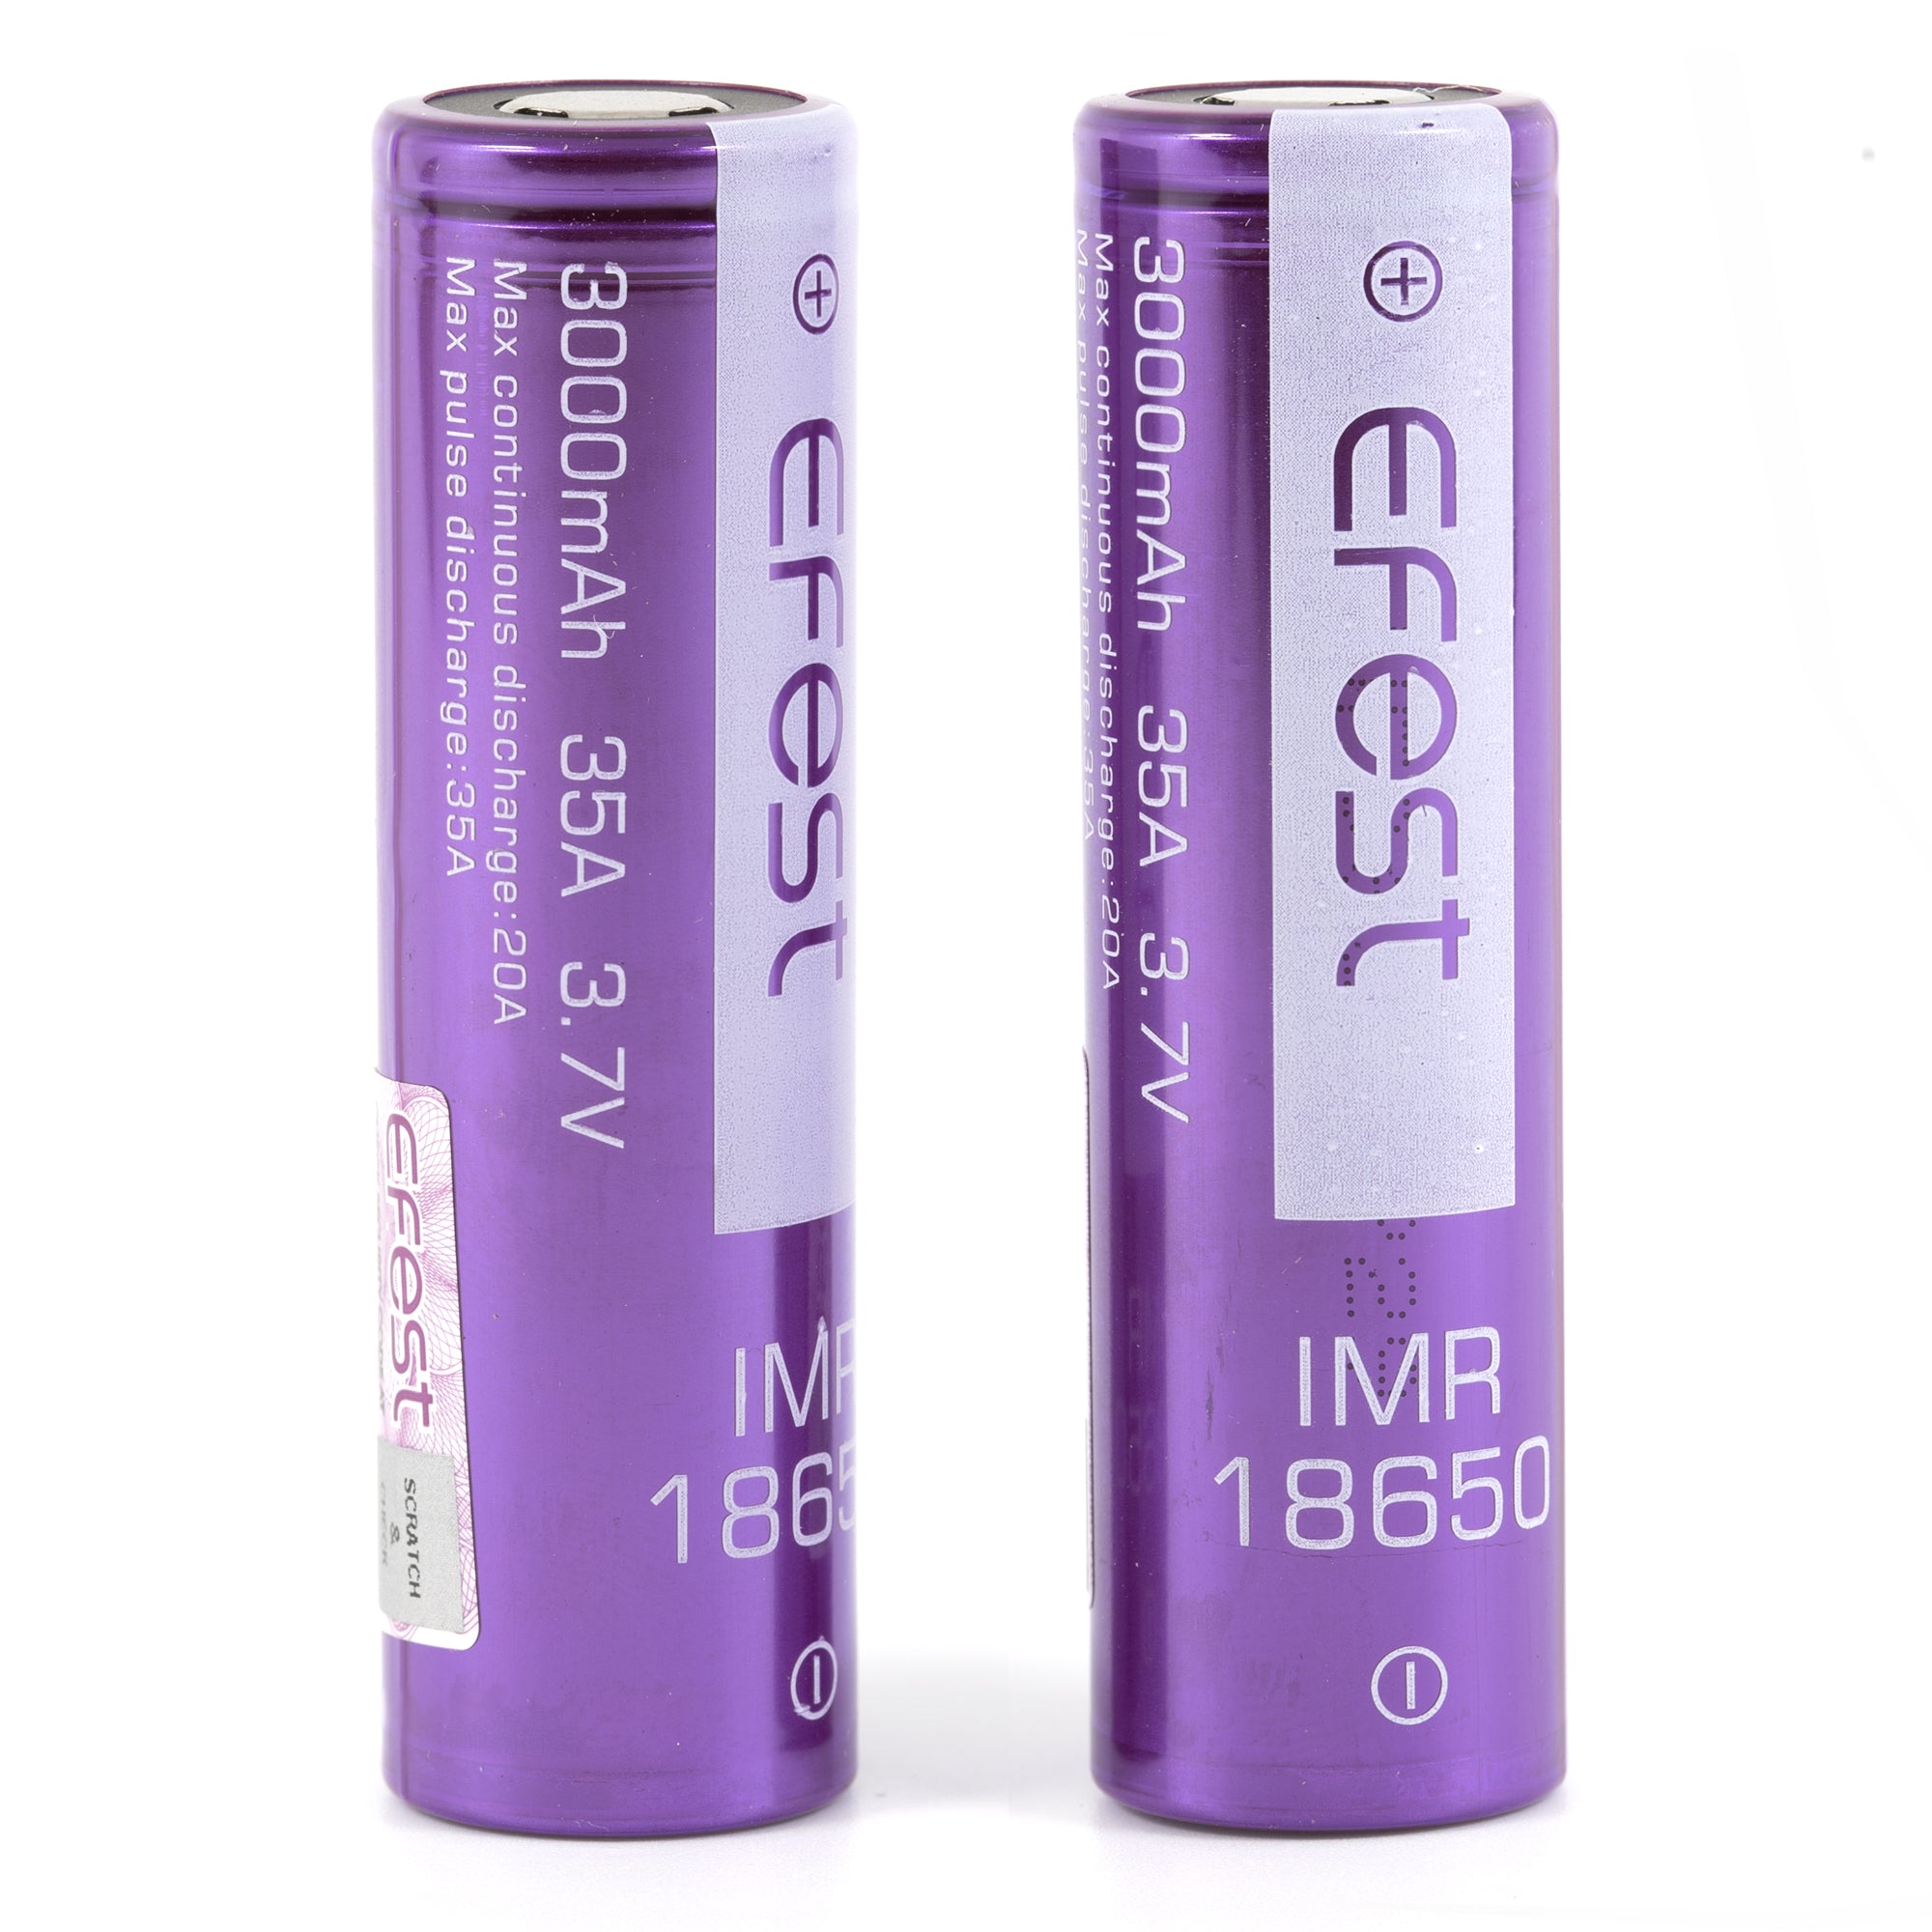 Efest IMR 18650 3000mAh 20A/35A Lithium Li-Ion Rechargeable Battery (2pc) [DG]